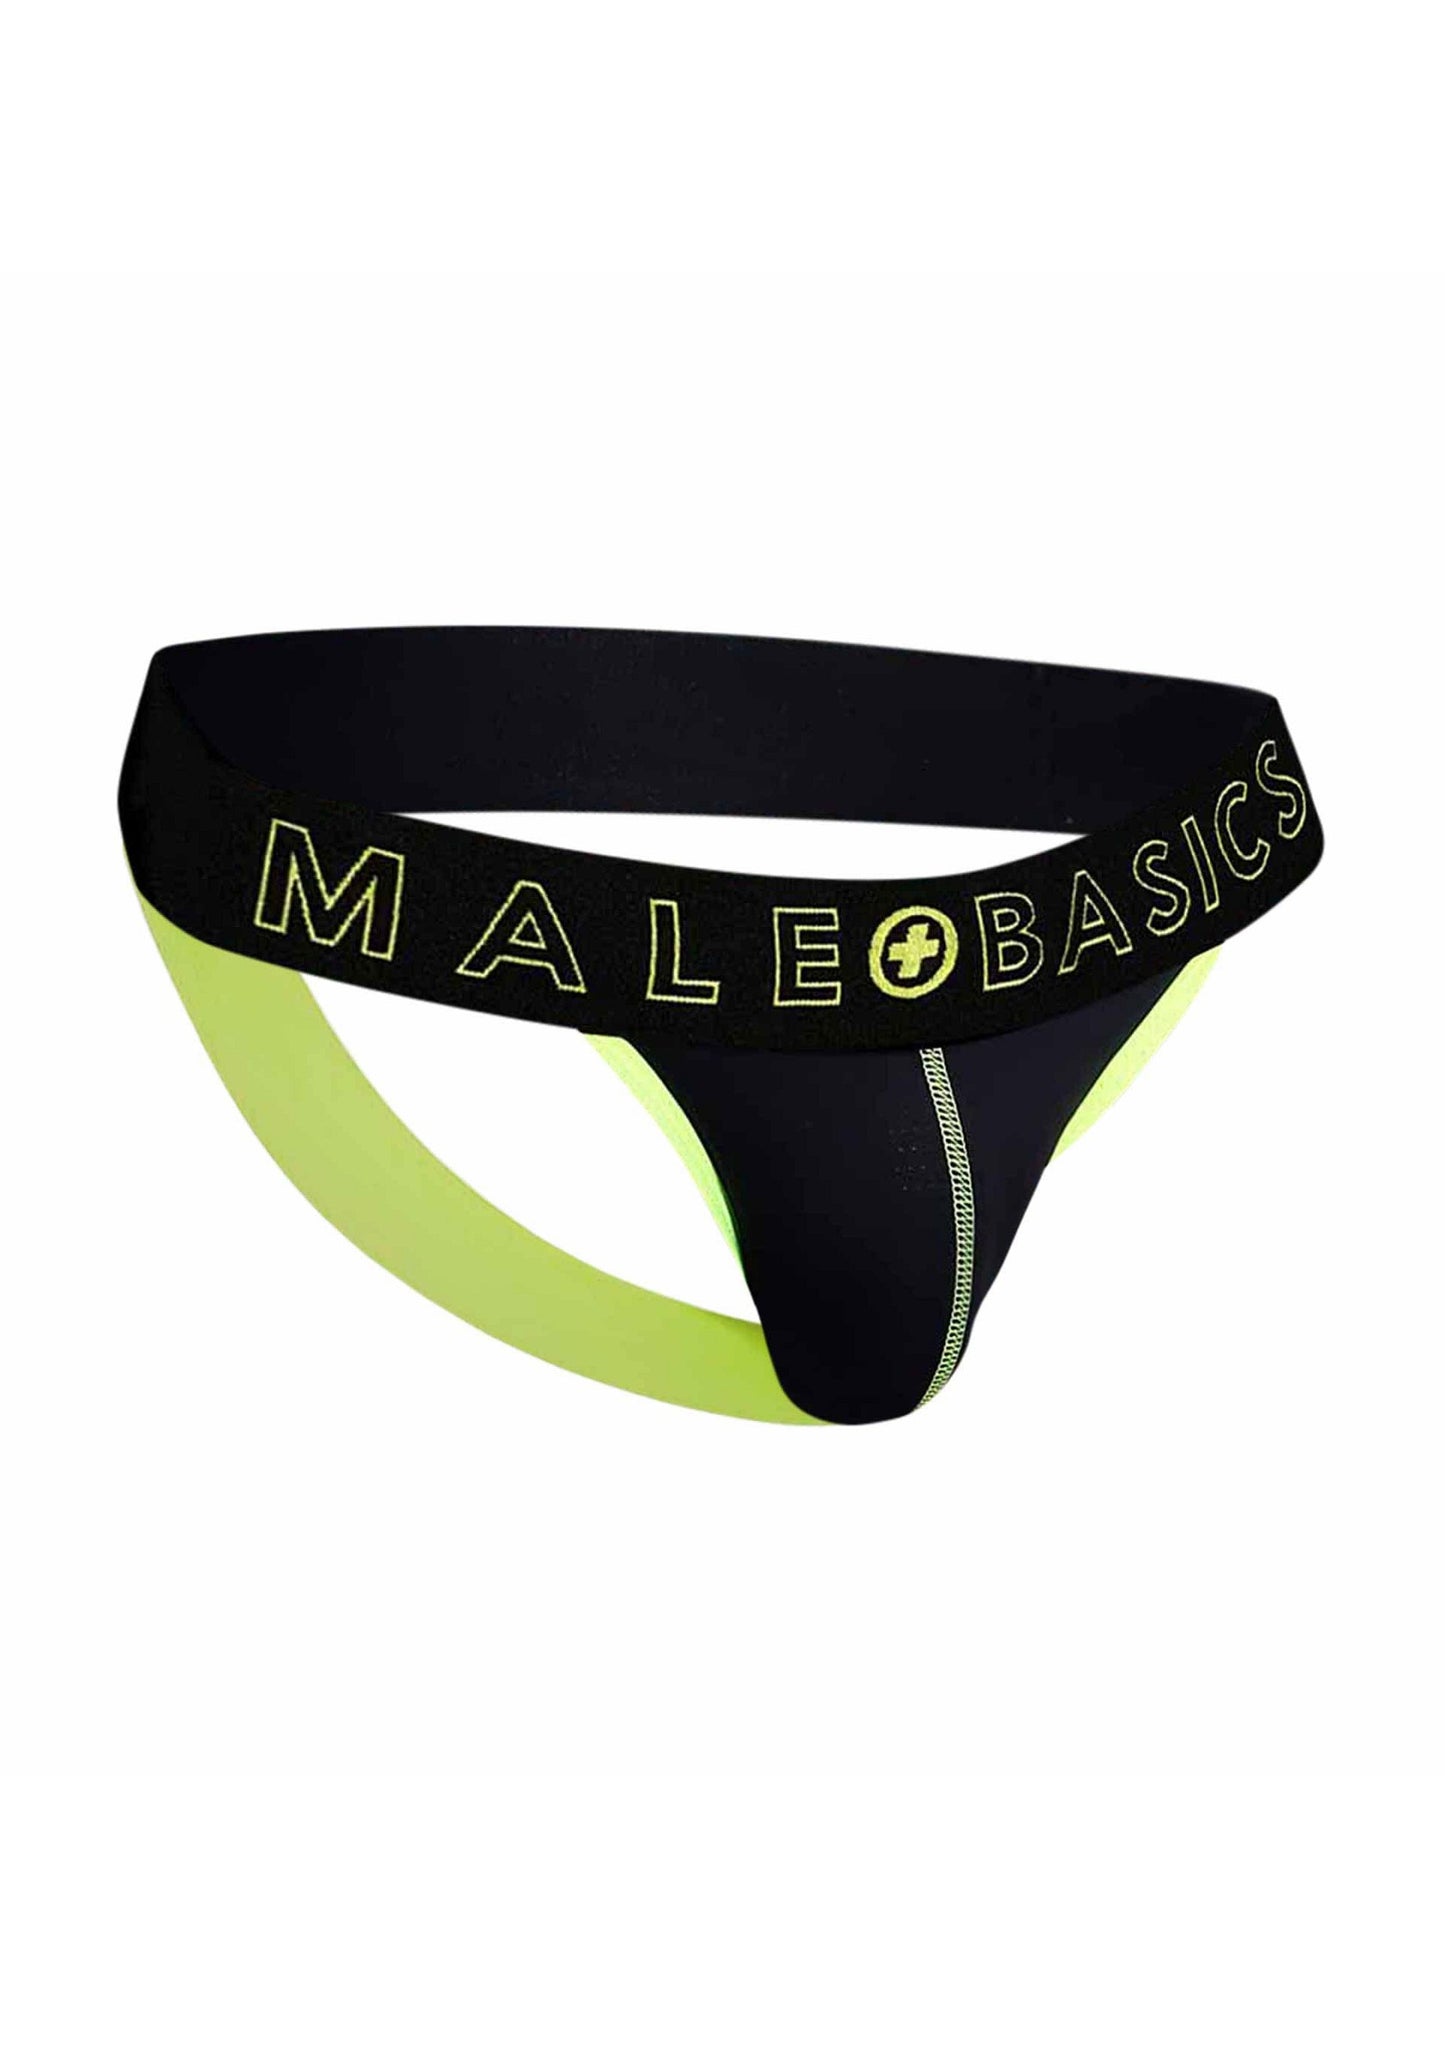 MaleBasics Neon Jock YELLOW S - 7